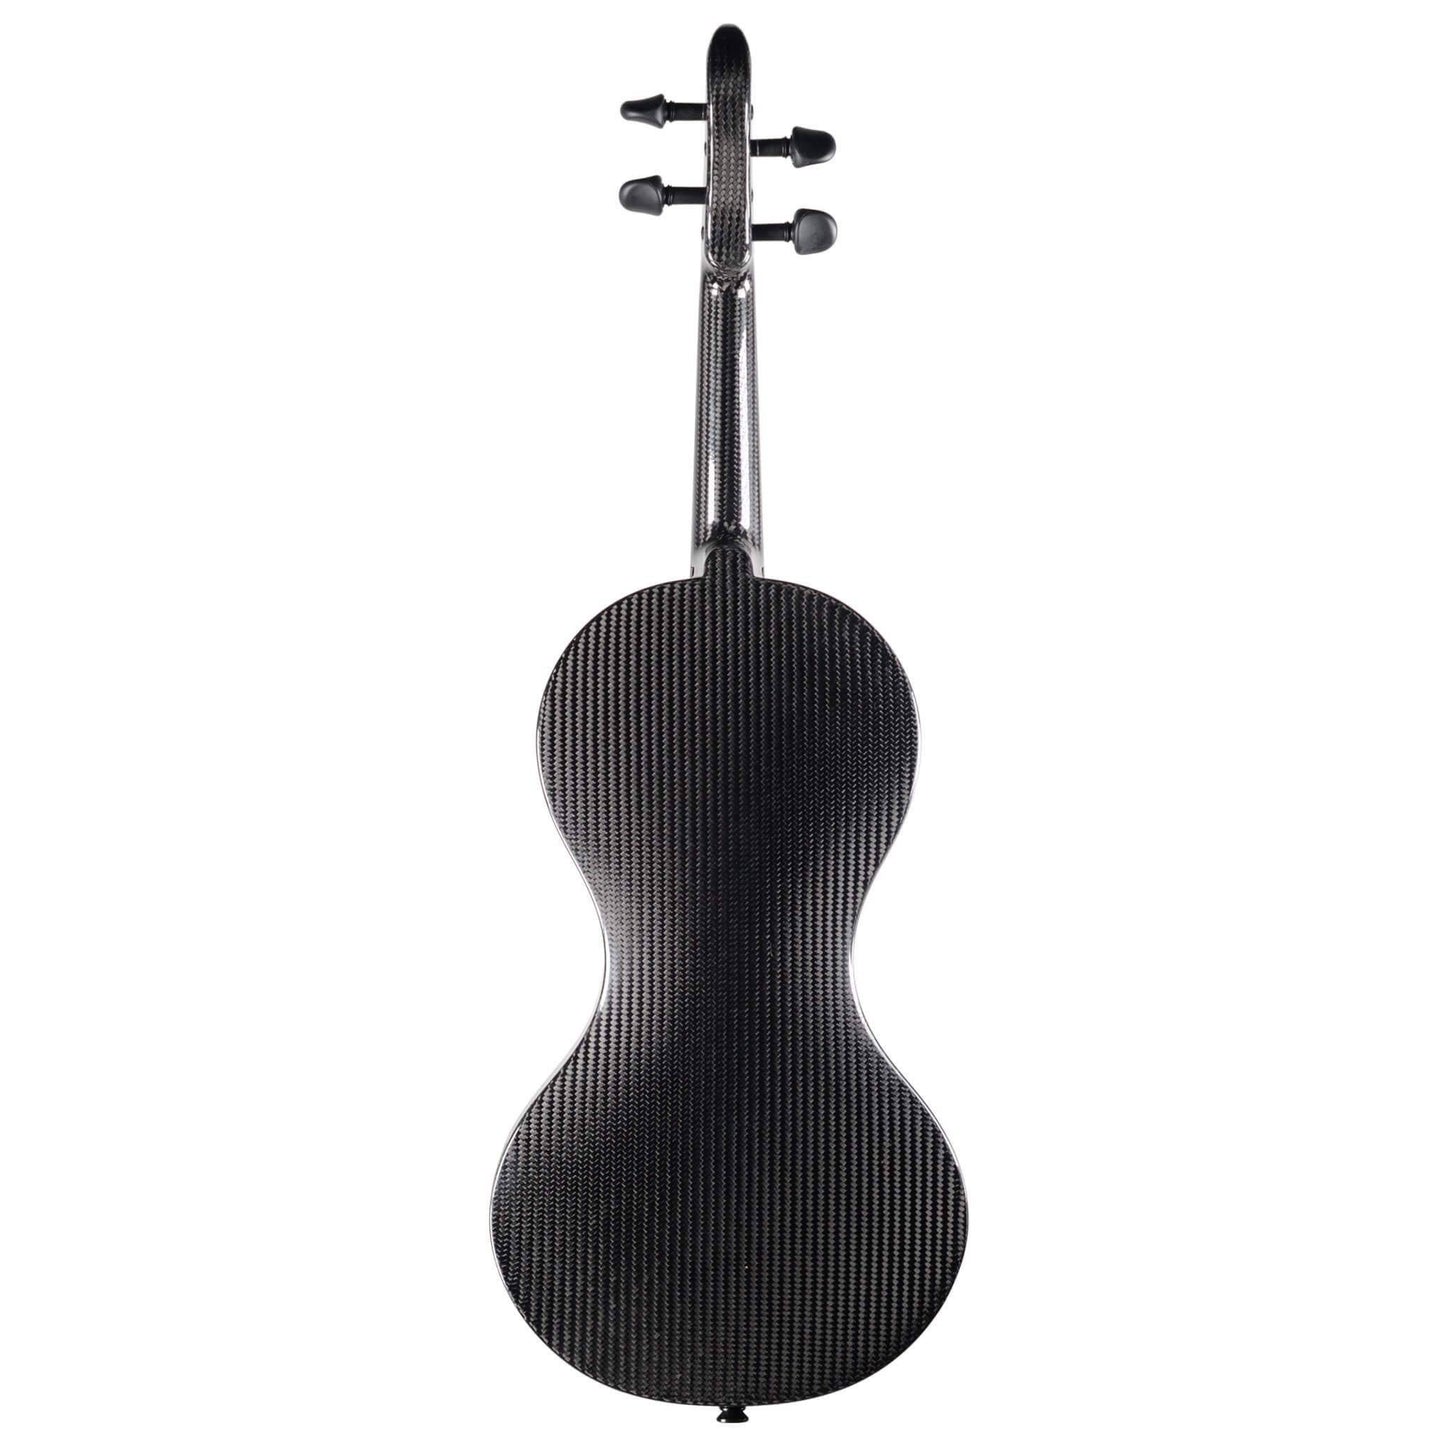 NEU: Carbon-Violinen-Set Gr. 3/4 inkl. Koffer, Bogen, Zubehör